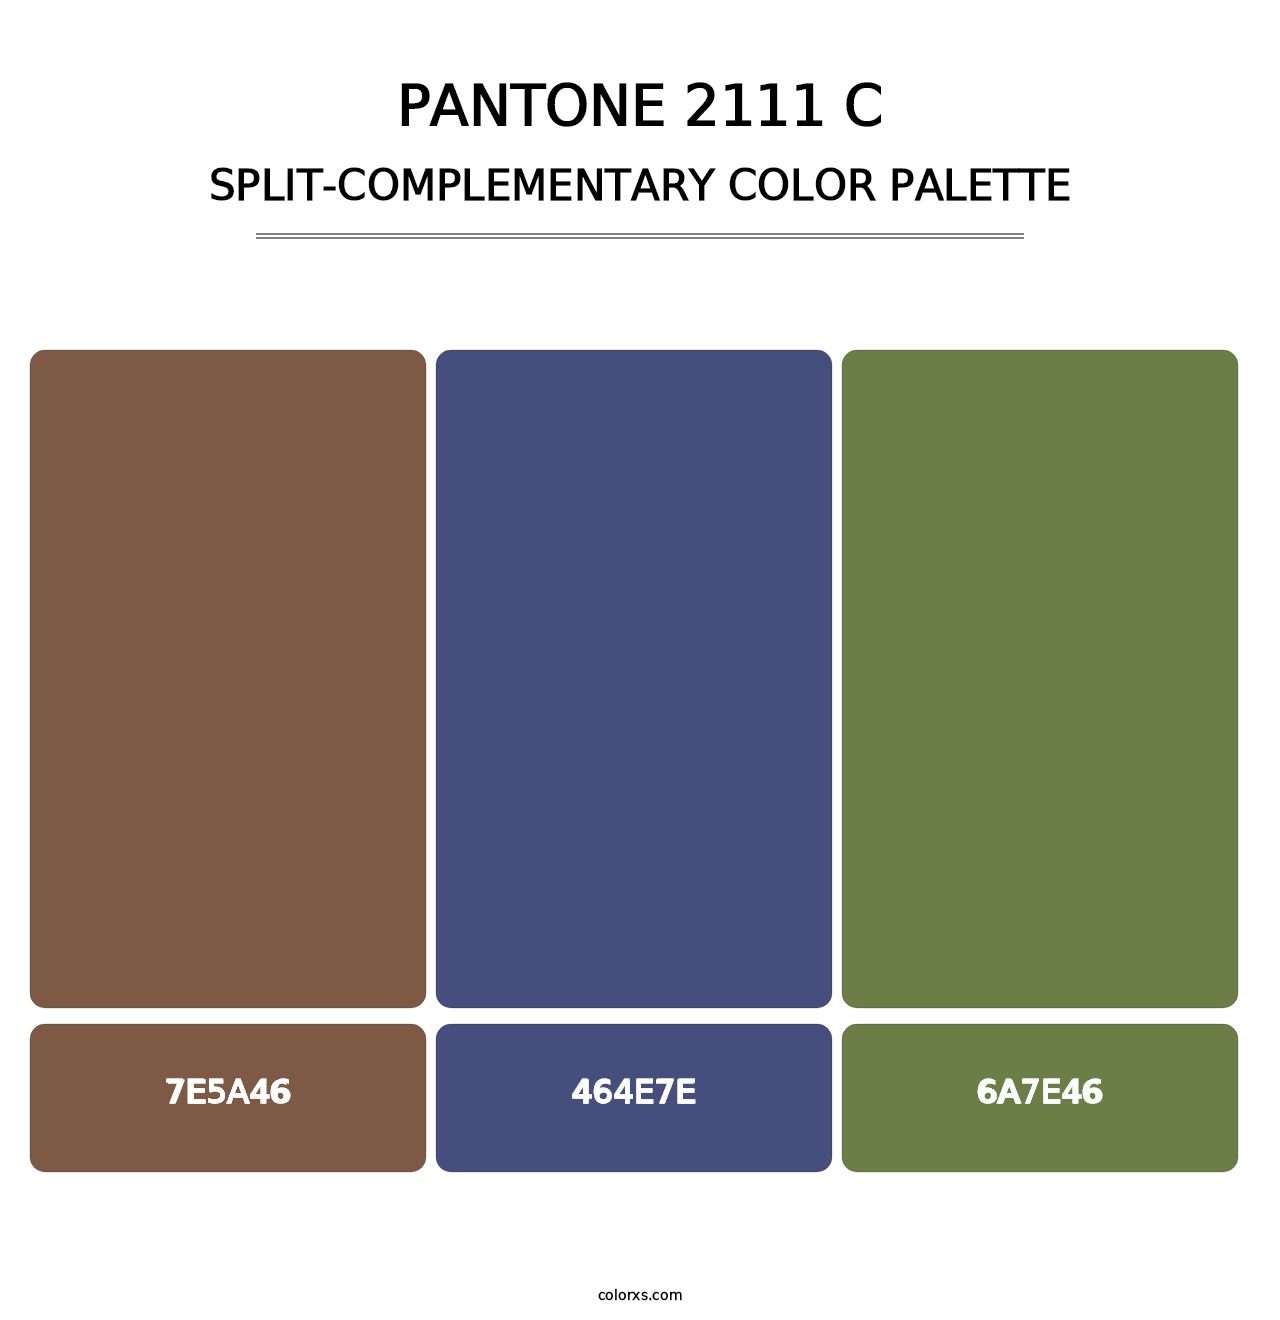 PANTONE 2111 C - Split-Complementary Color Palette